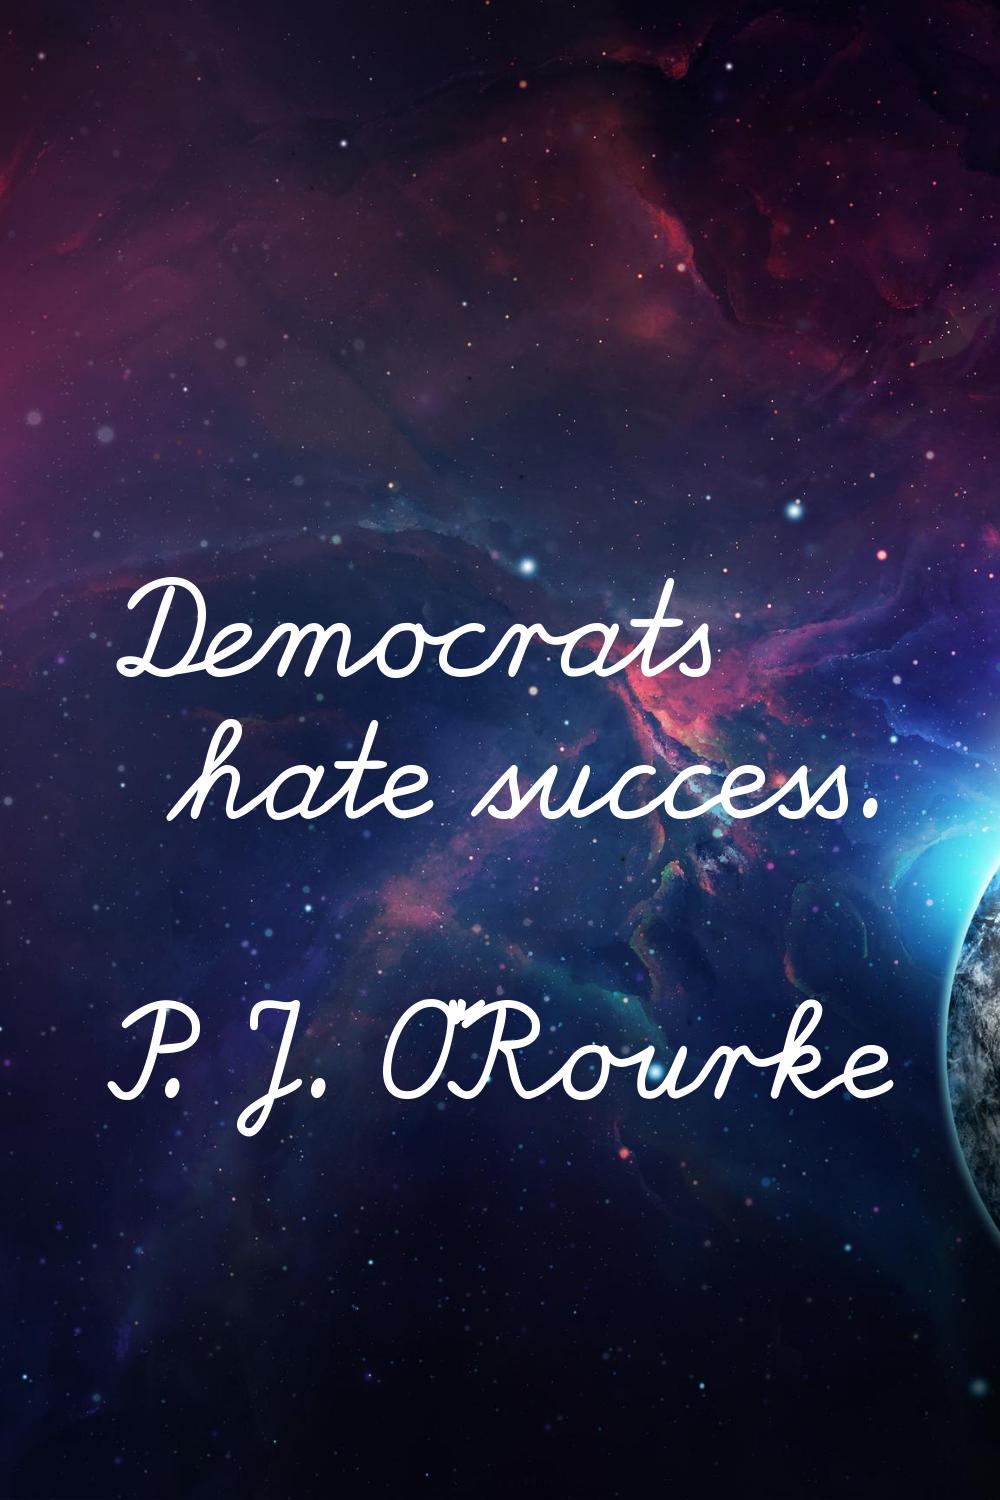 Democrats hate success.